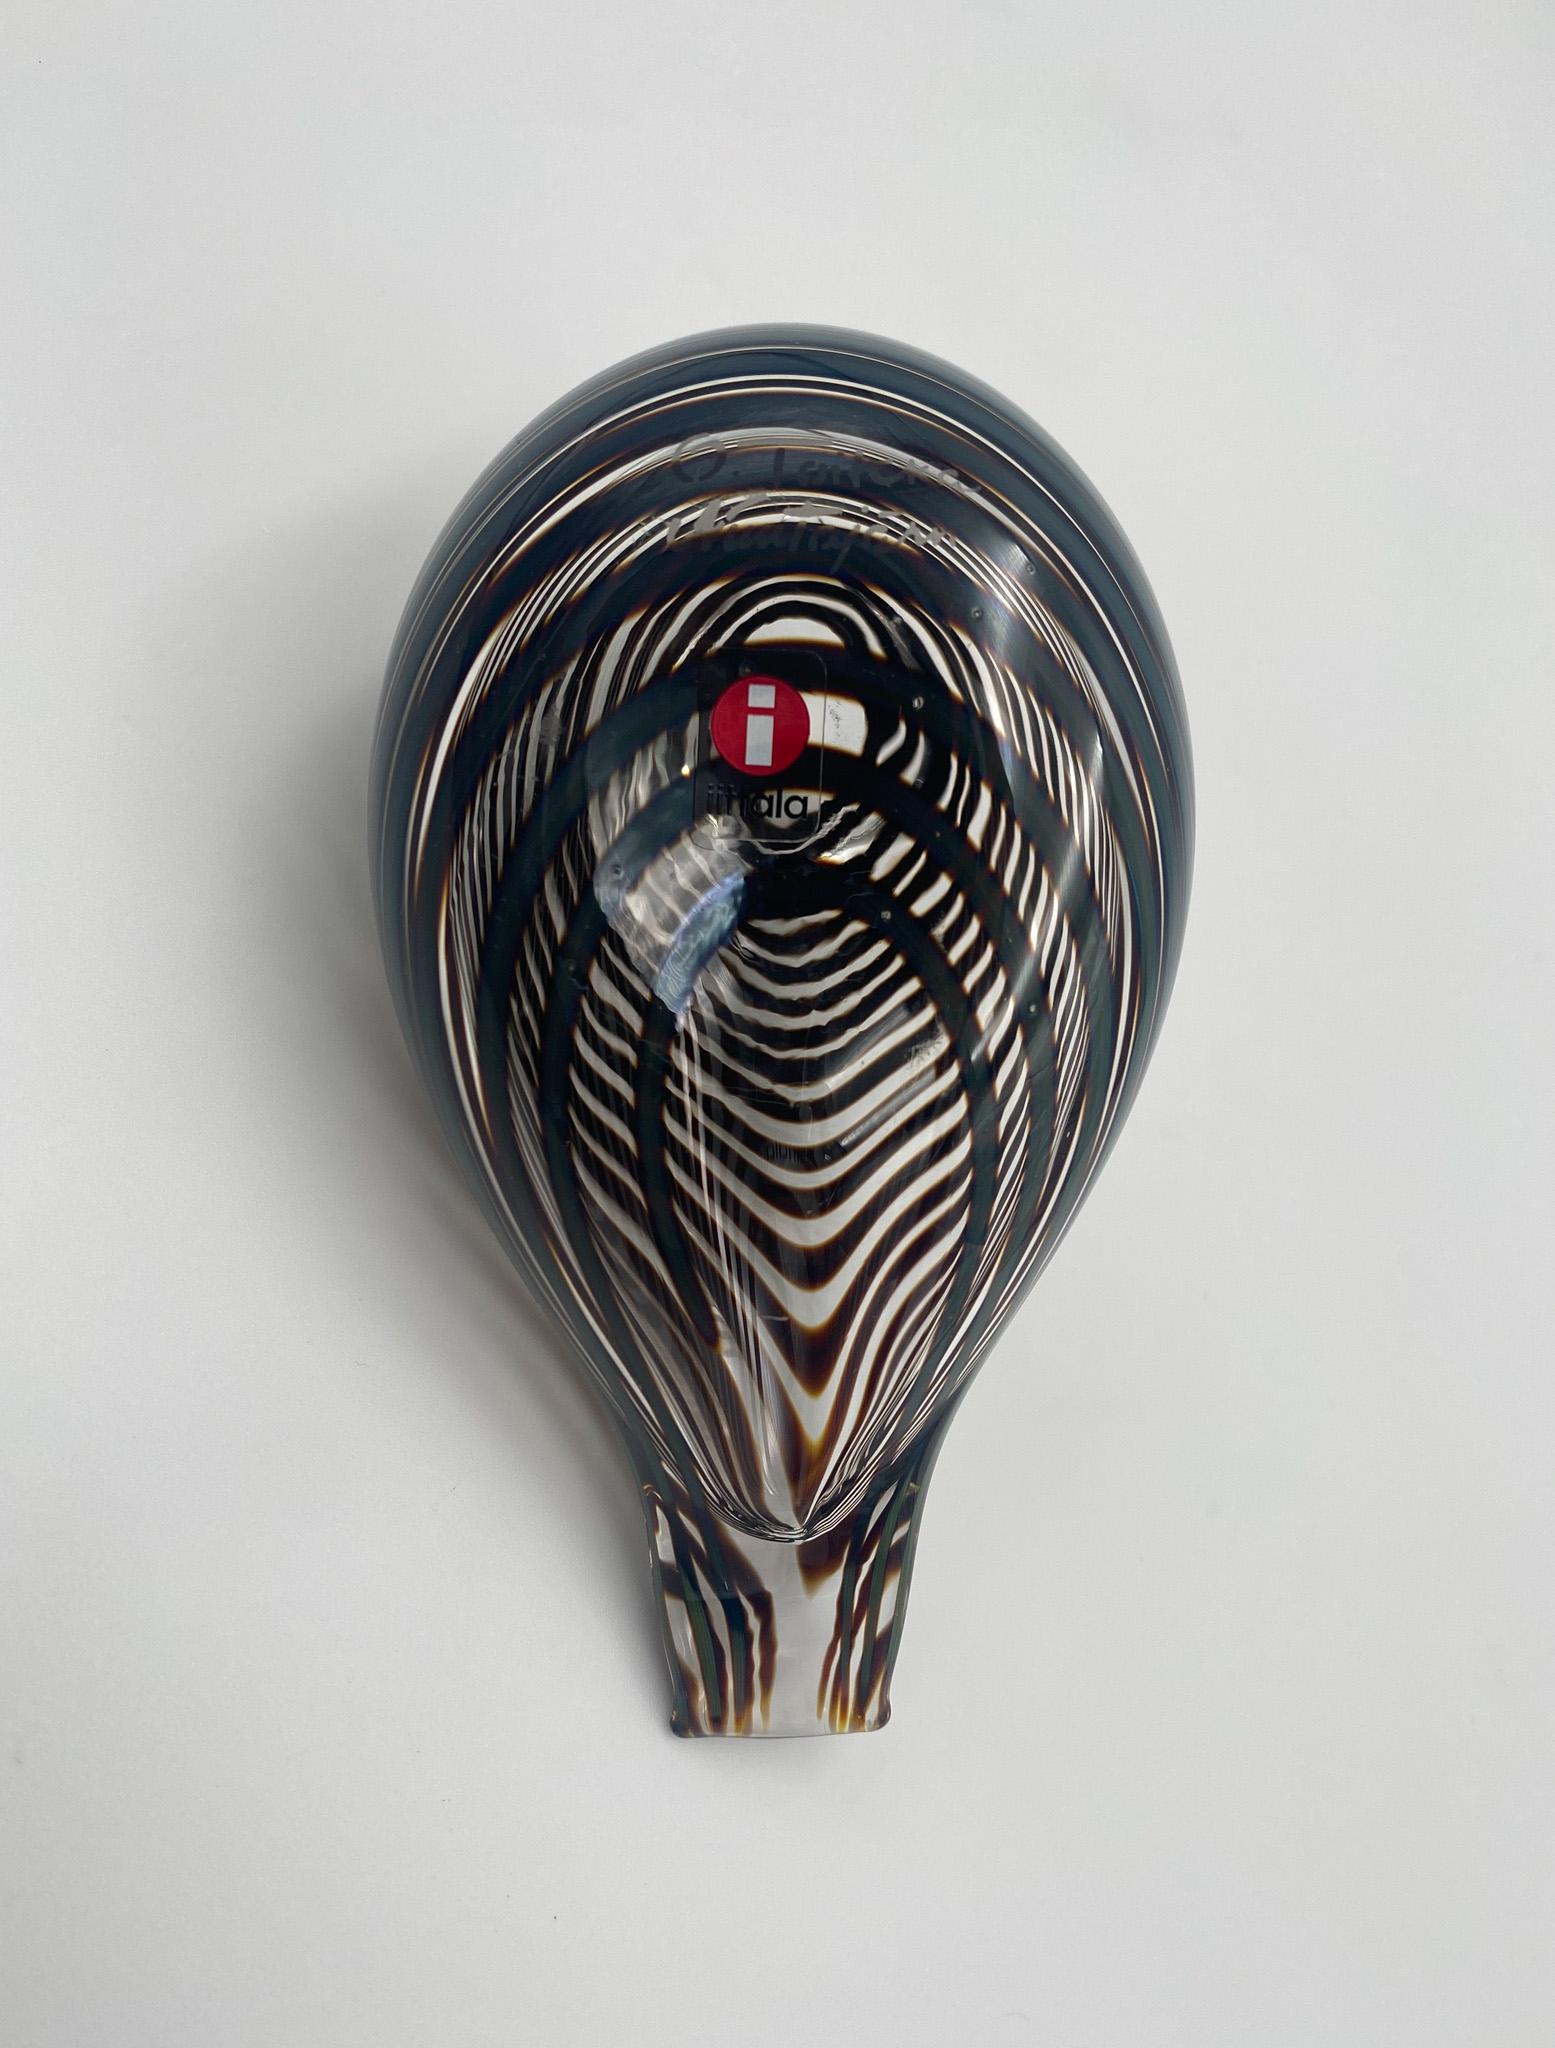 Oiva Toikka Art Glass Bird Sculpture for Iittala of Finland For Sale 6